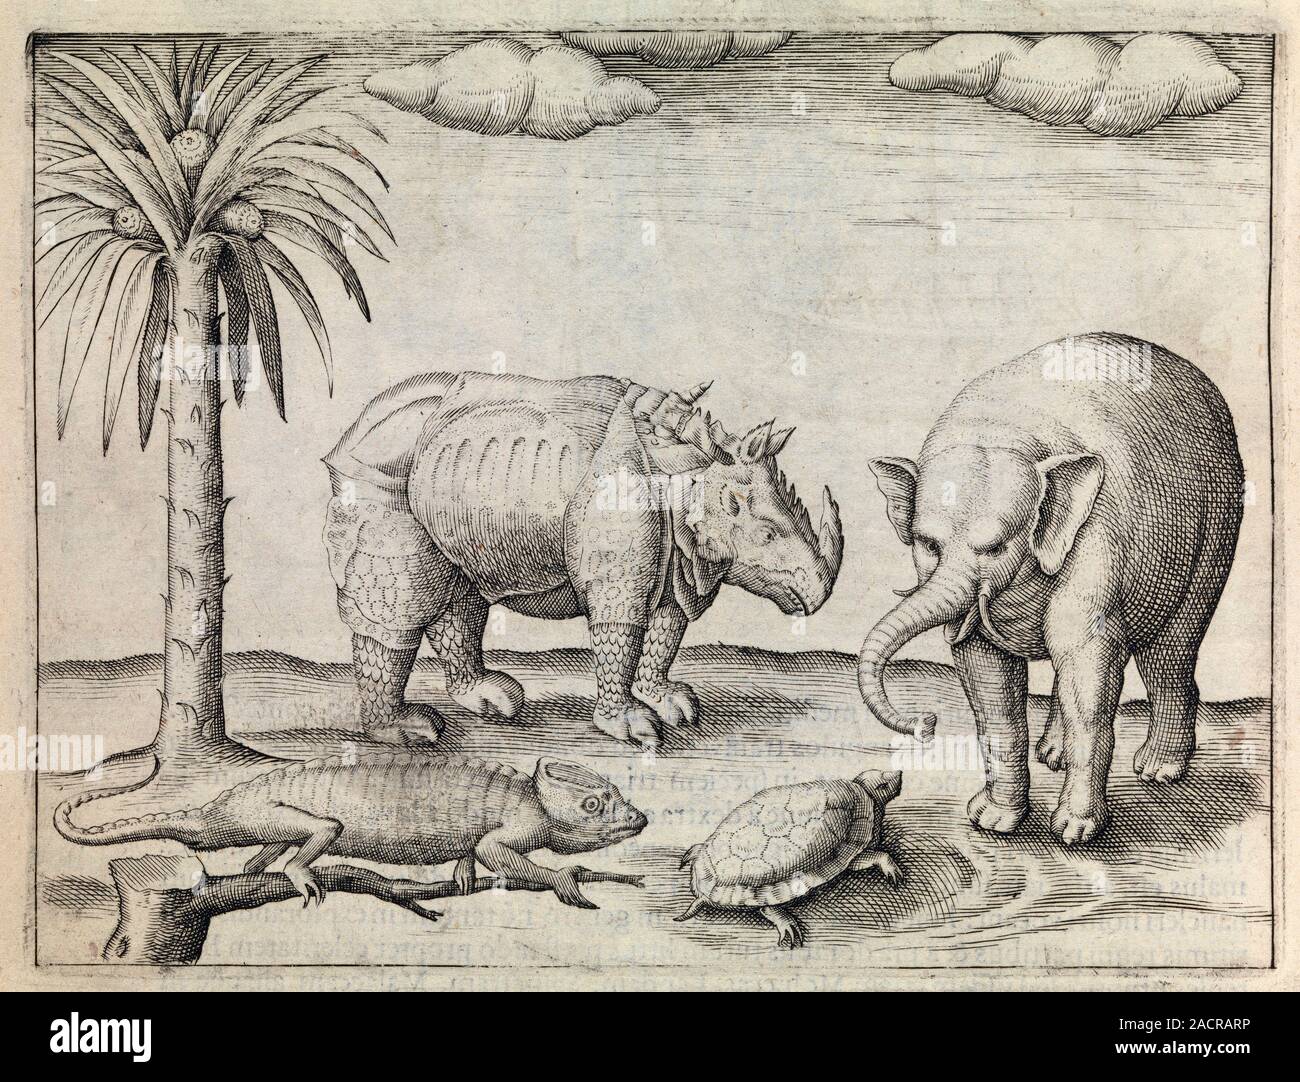 Tiere von Java. 17. jahrhundert Kunstwerk eines Rhinozeros, Elefanten, eine  Schildkröte und einen Leguan aus Java, zusammen mit einem Baum. Diese Tiere  wurden obser Stockfotografie - Alamy